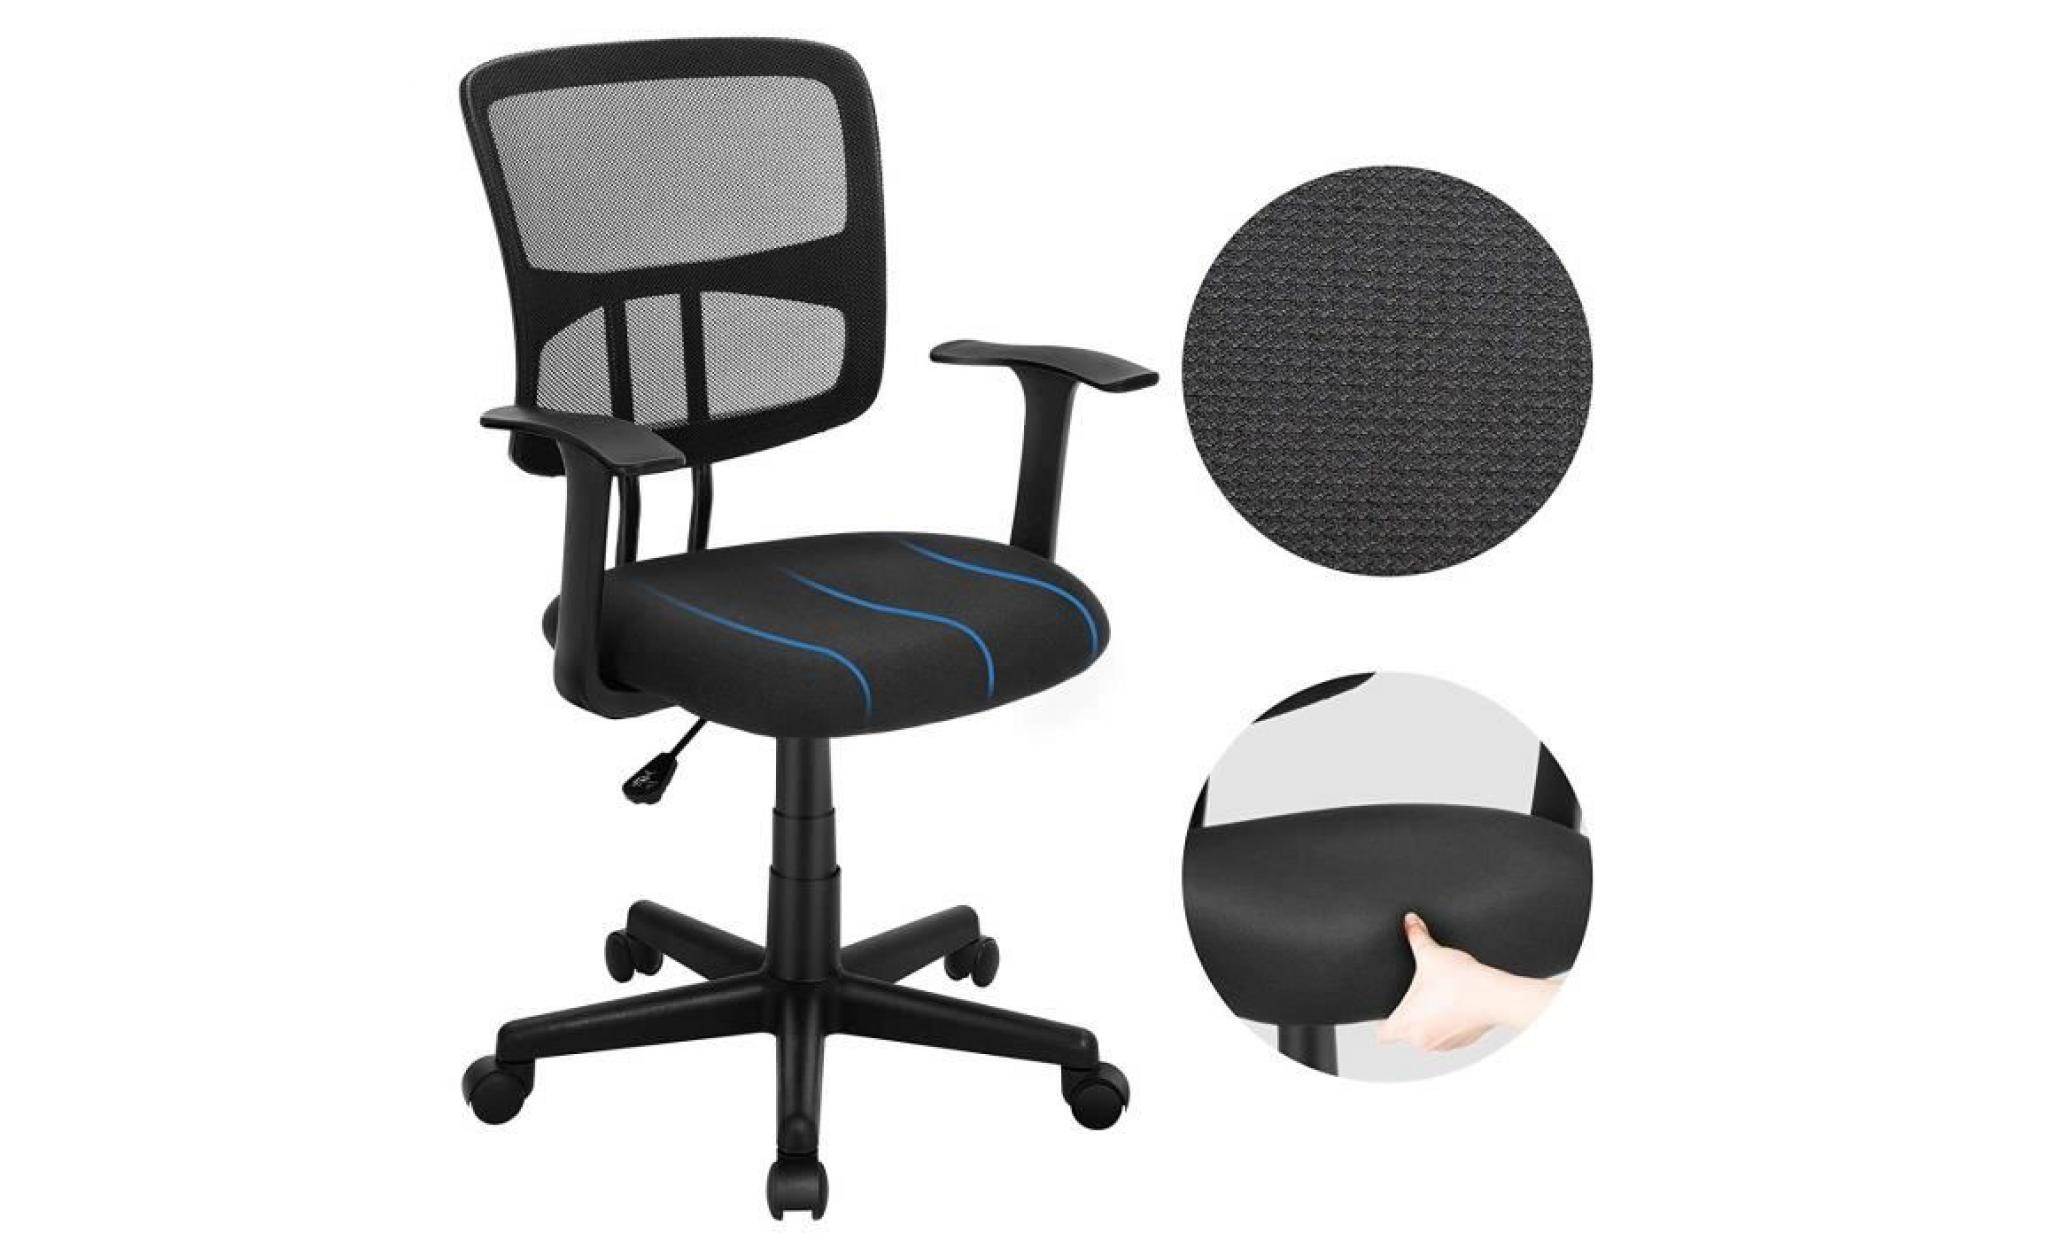 songmics chaise de bureau siège de bureau fauteuil ergonomique en maille rotatif accoudoirs en t charge maximale 120 kg obn11bk pas cher